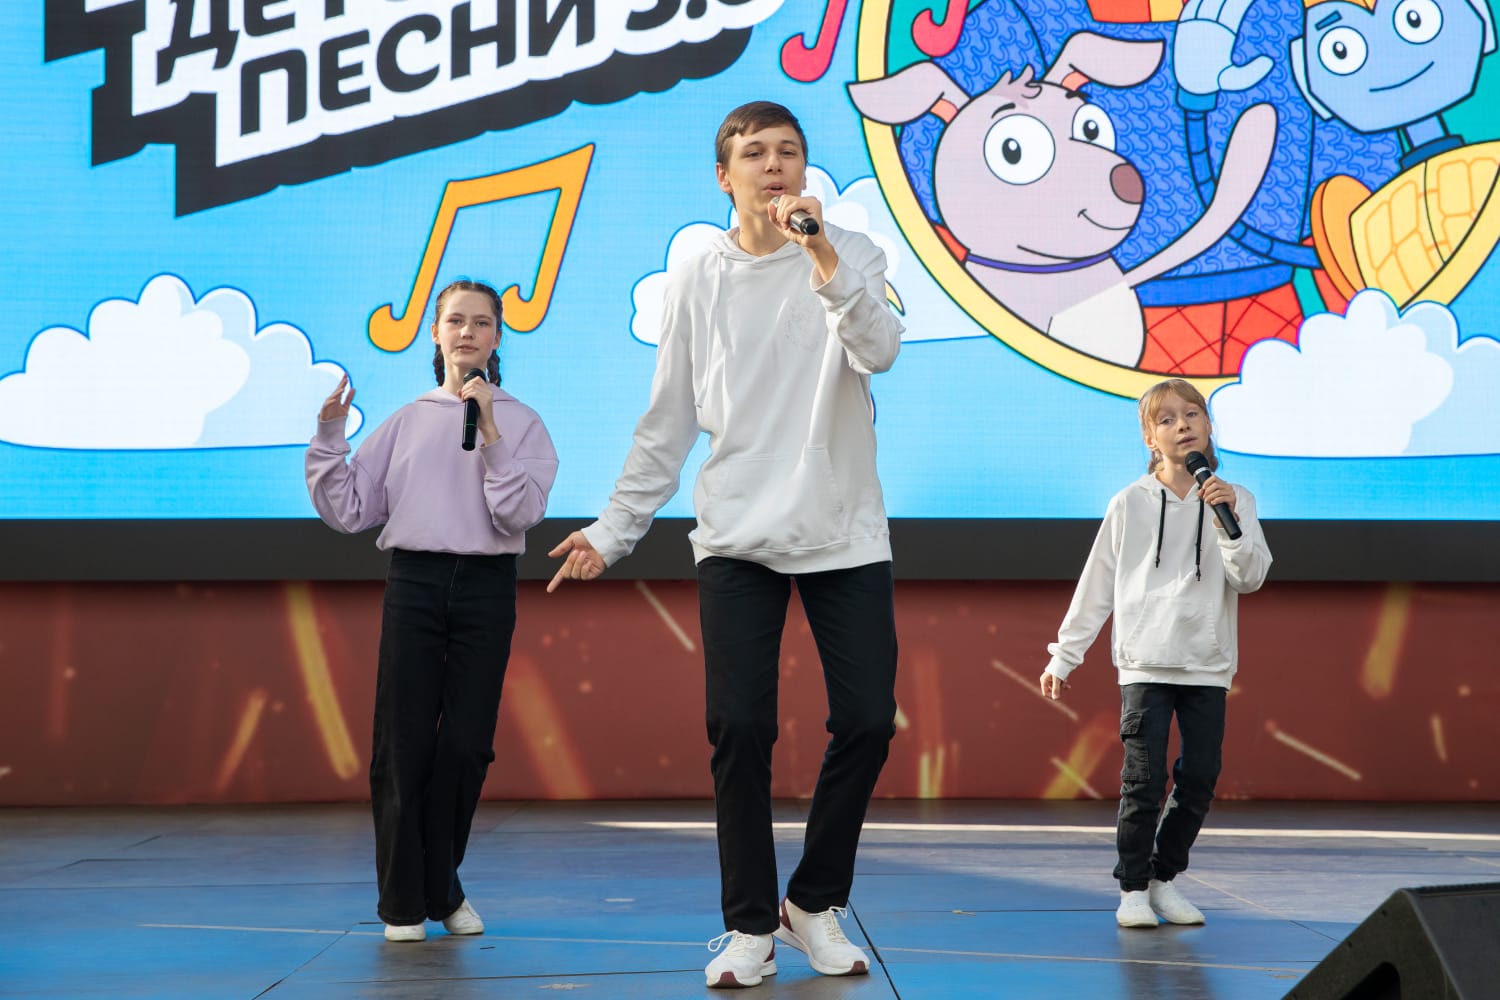 Около шести тысяч московских школьников за лето посетили детский городской клуб Музея Победы